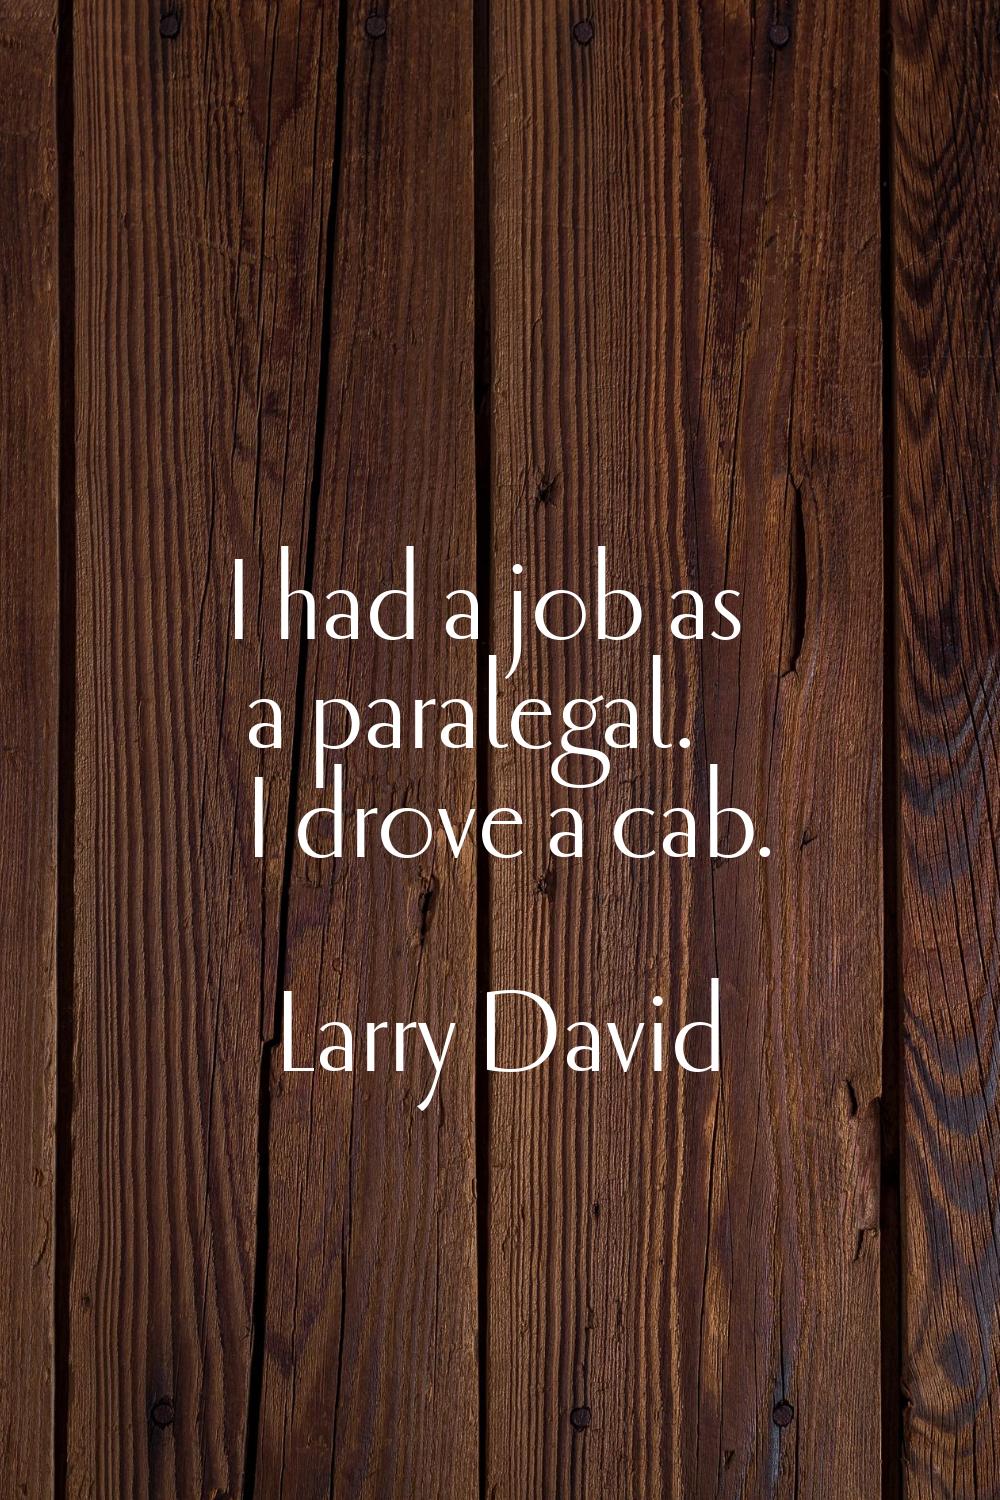 I had a job as a paralegal. I drove a cab.